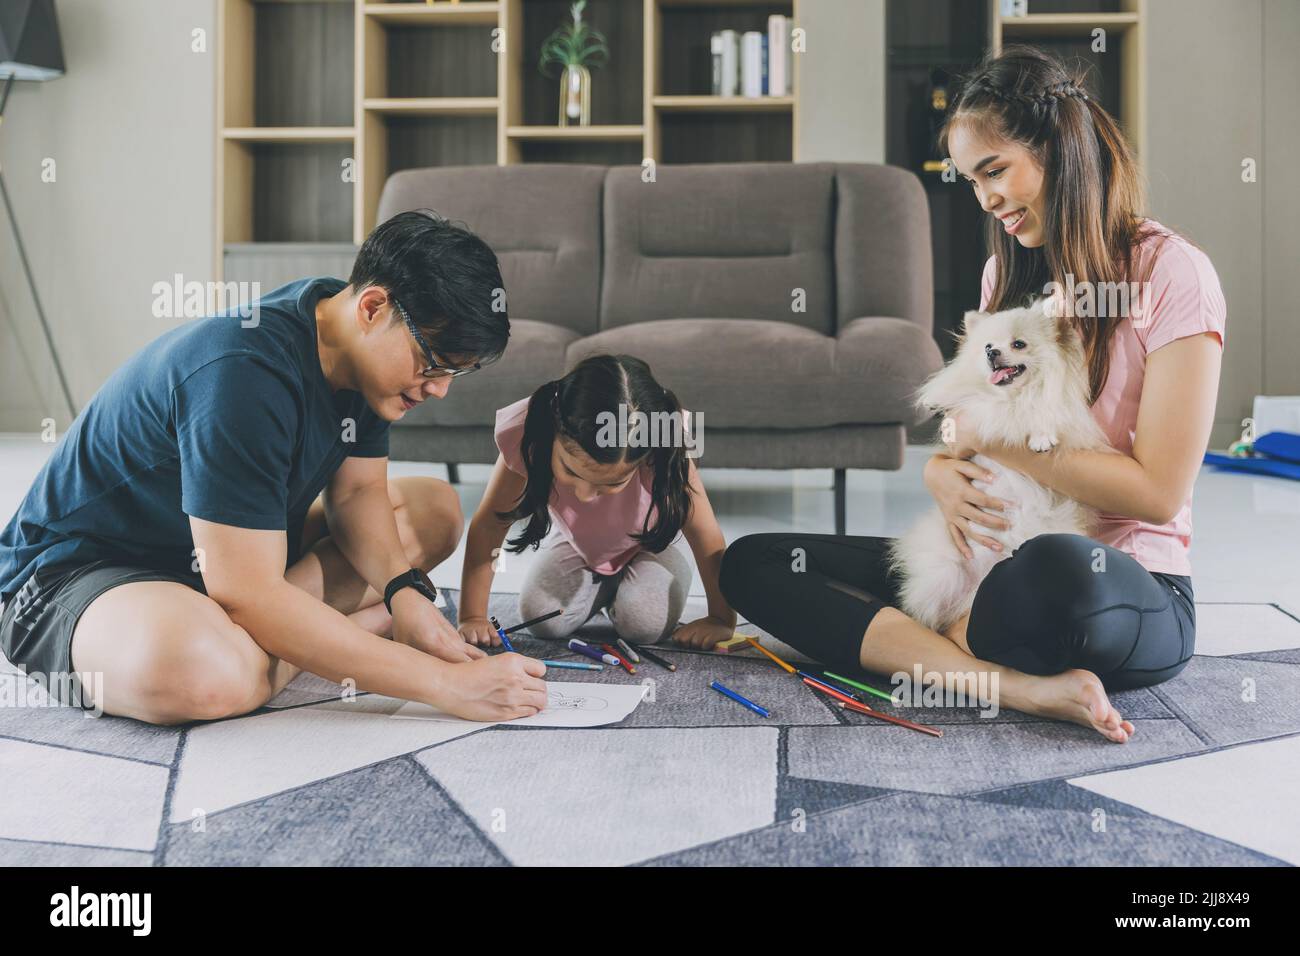 Une famille asiatique heureuse jouant avec un enfant et un animal de compagnie sympathique à la maison. Banque D'Images